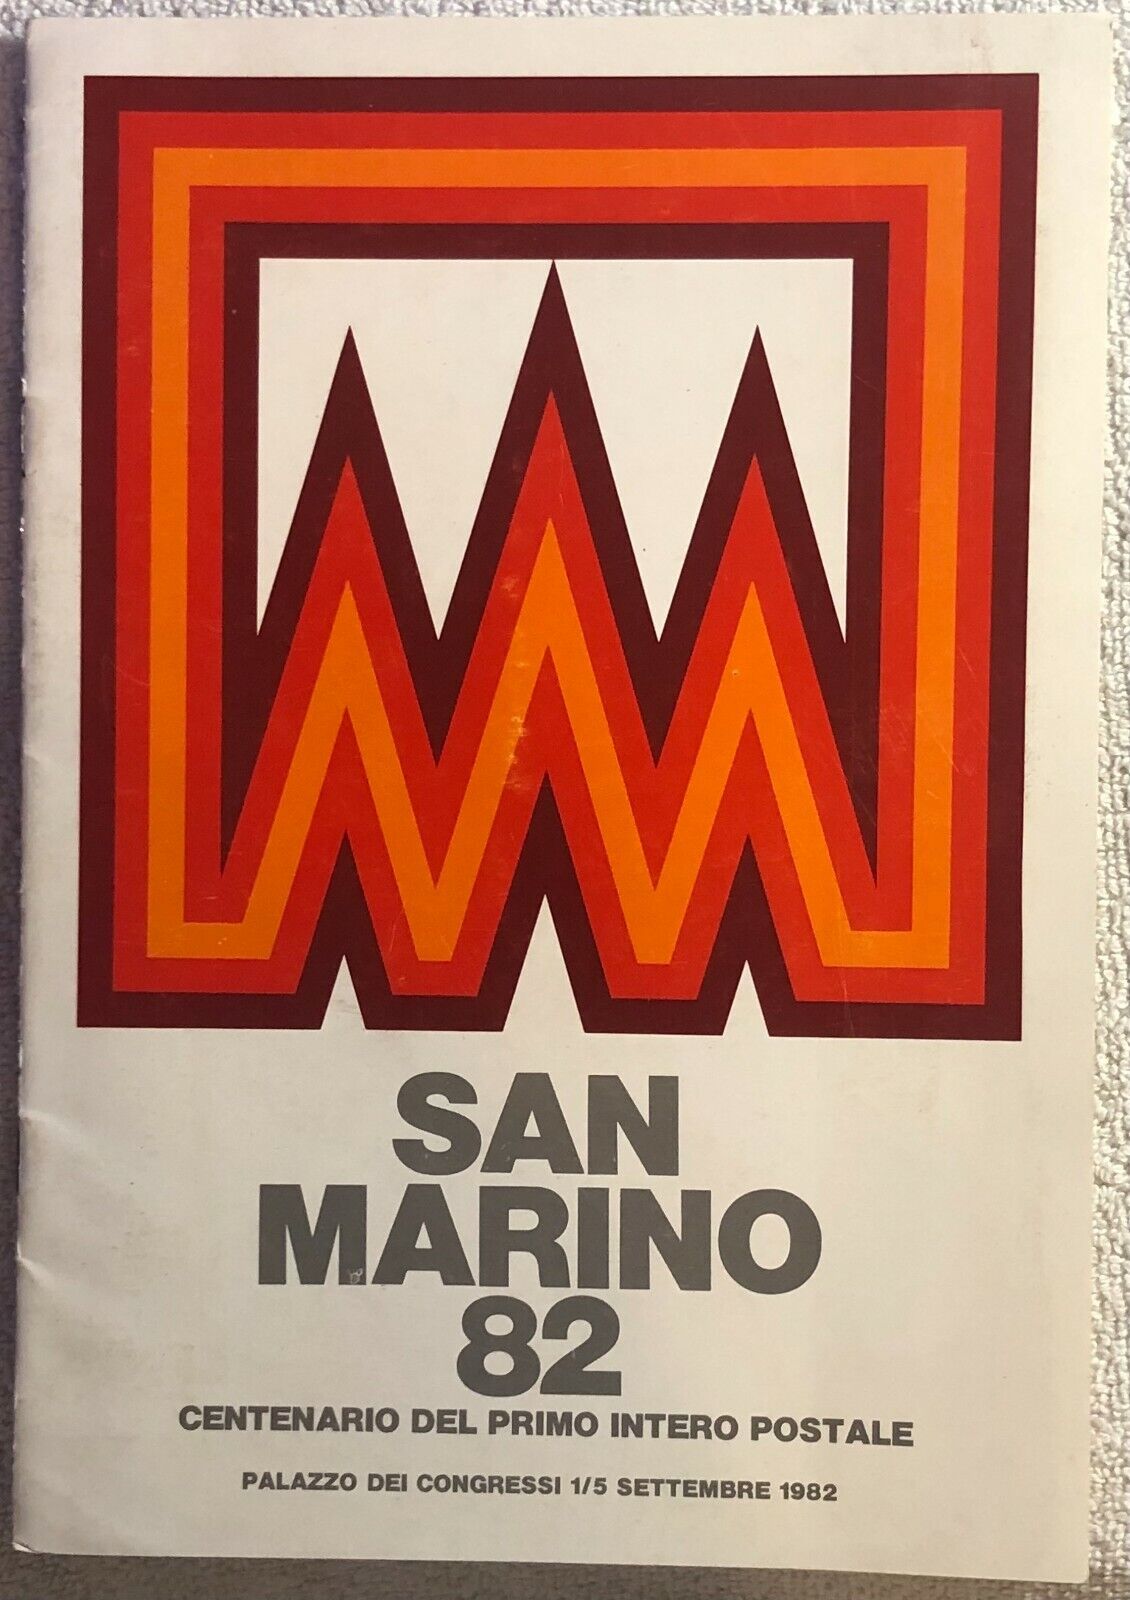 San Marino 82 - Centenario del primo intero postale di Aa.vv.,  1982,  Ufficio F